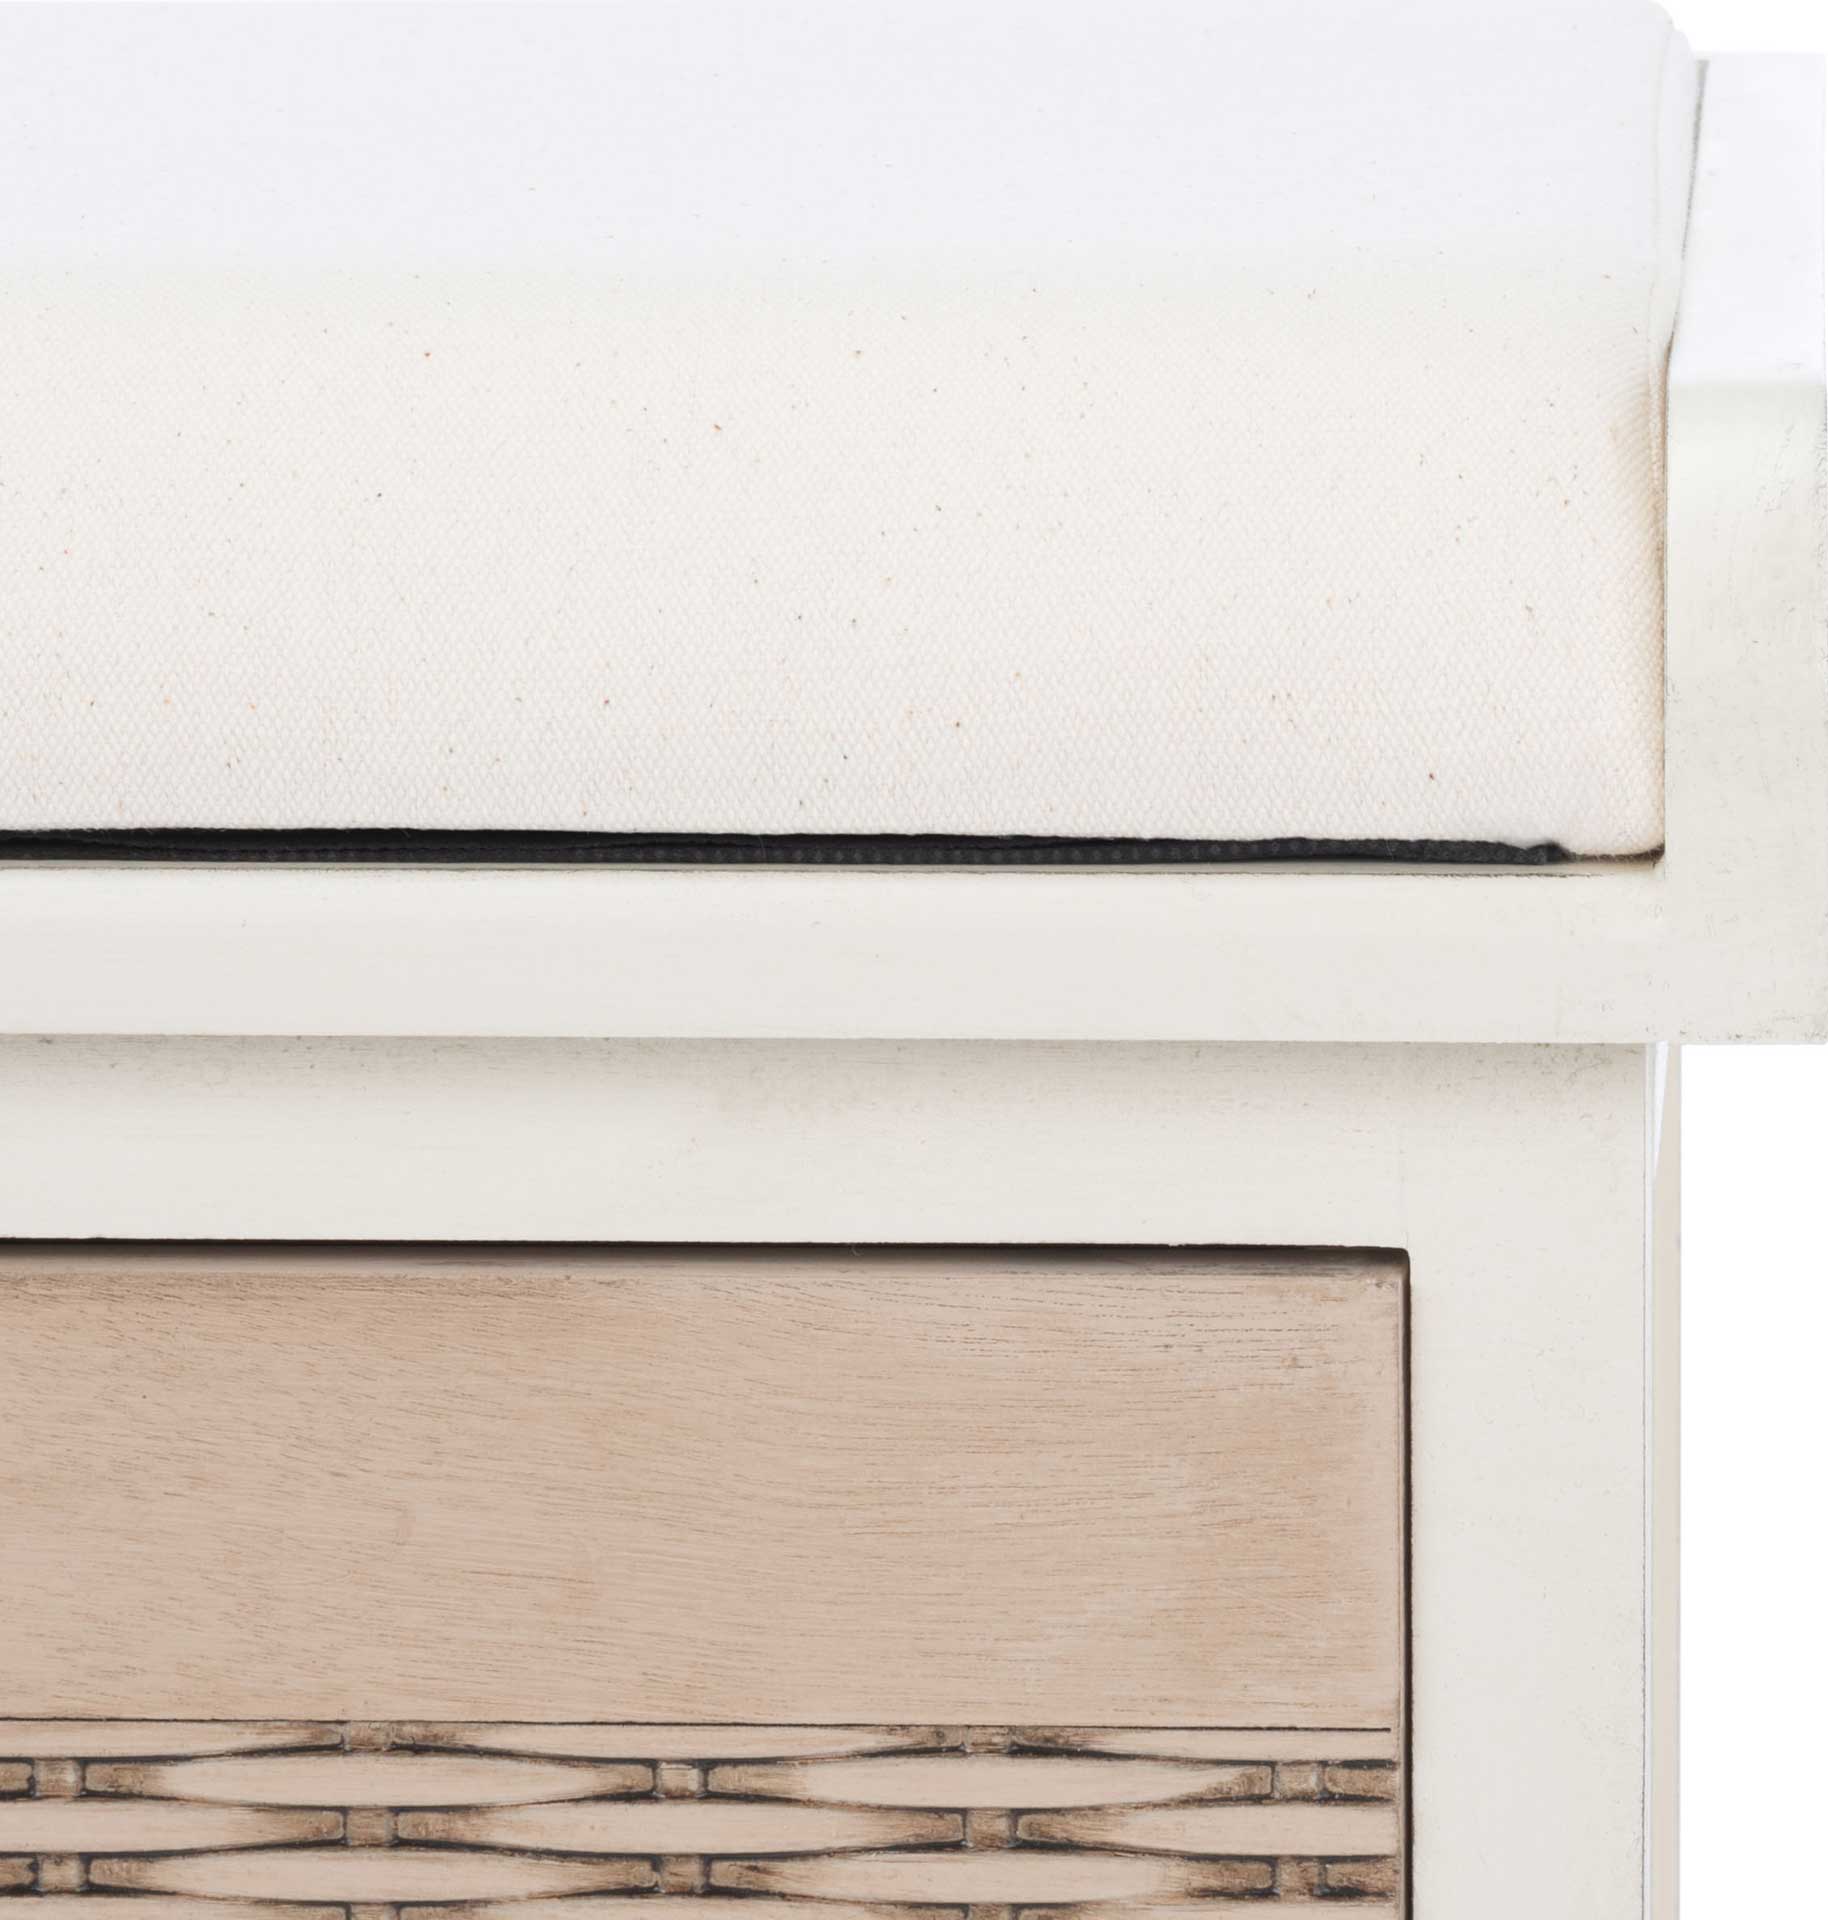 Lali 2 Drawer/Cushion Storage Bench Distressed White